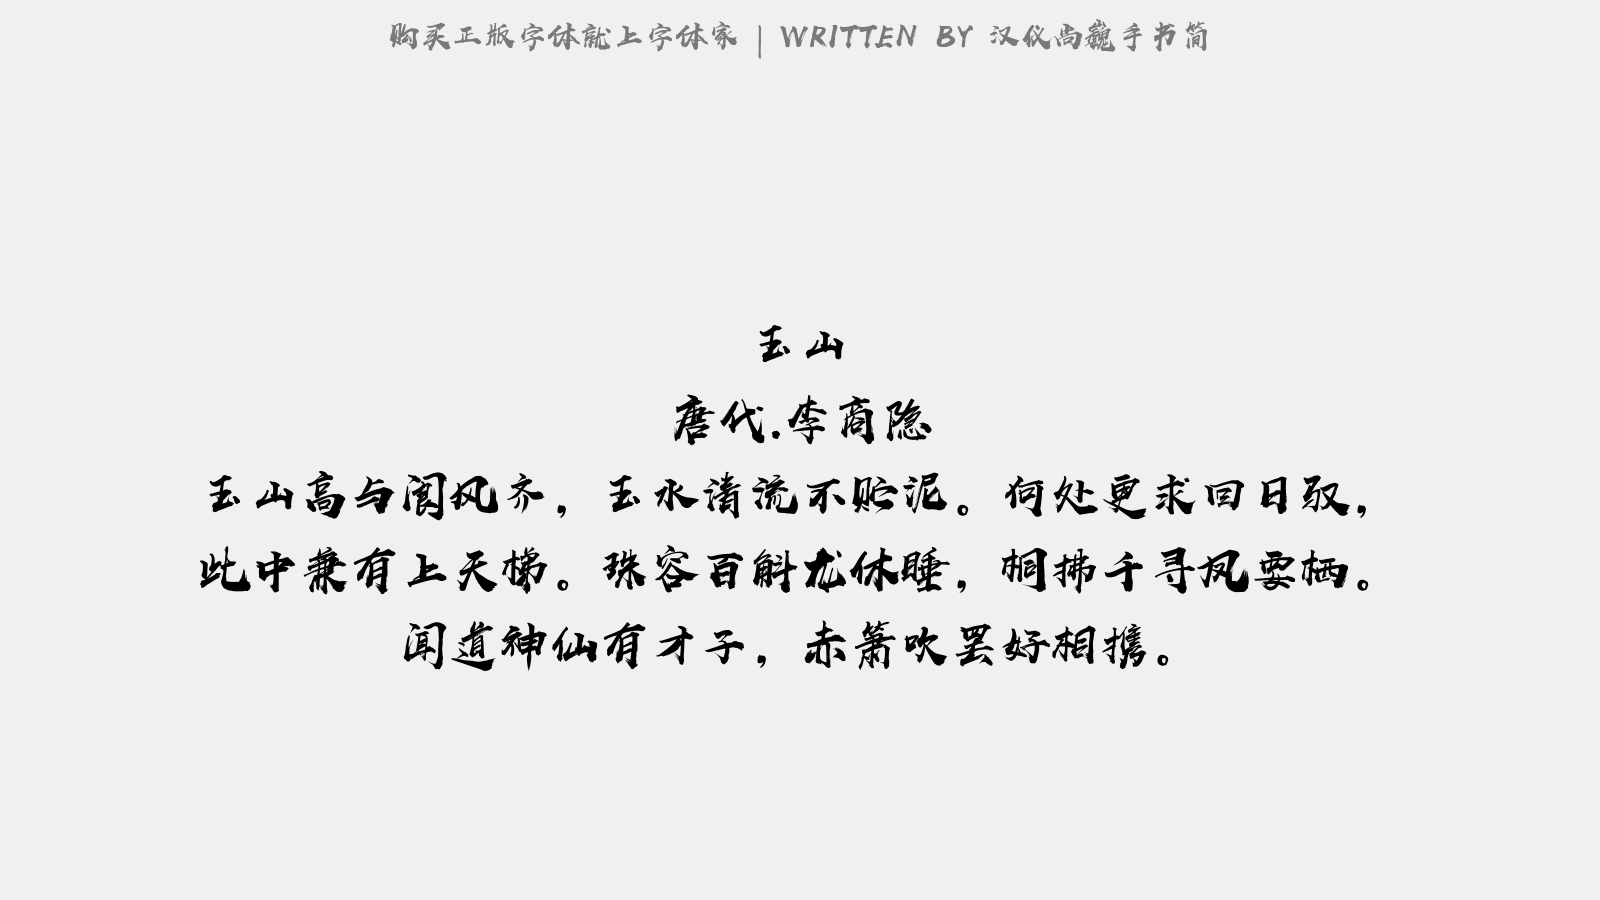 汉仪尚巍手书简正版字体下载 正版中文字体下载尽在字体家